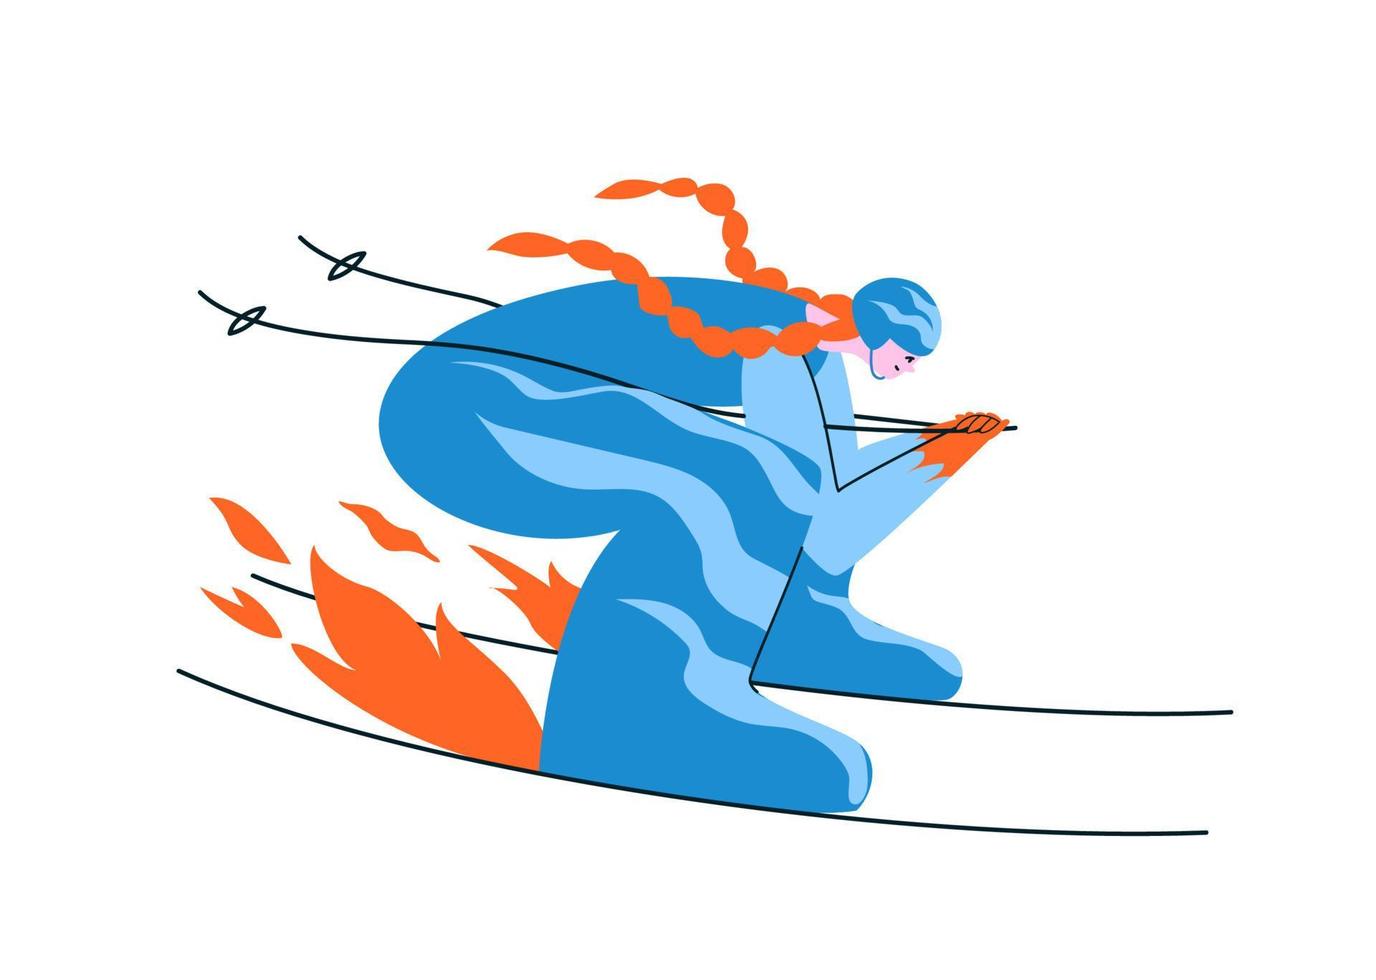 esquiador de ruiva desenhados à mão em um terno azul. uma jovem esquia em uma pose aerodinâmica a toda velocidade que o fogo sob os esquis acende. ilustração vetorial de estoque em estilo cartoon em branco. vetor